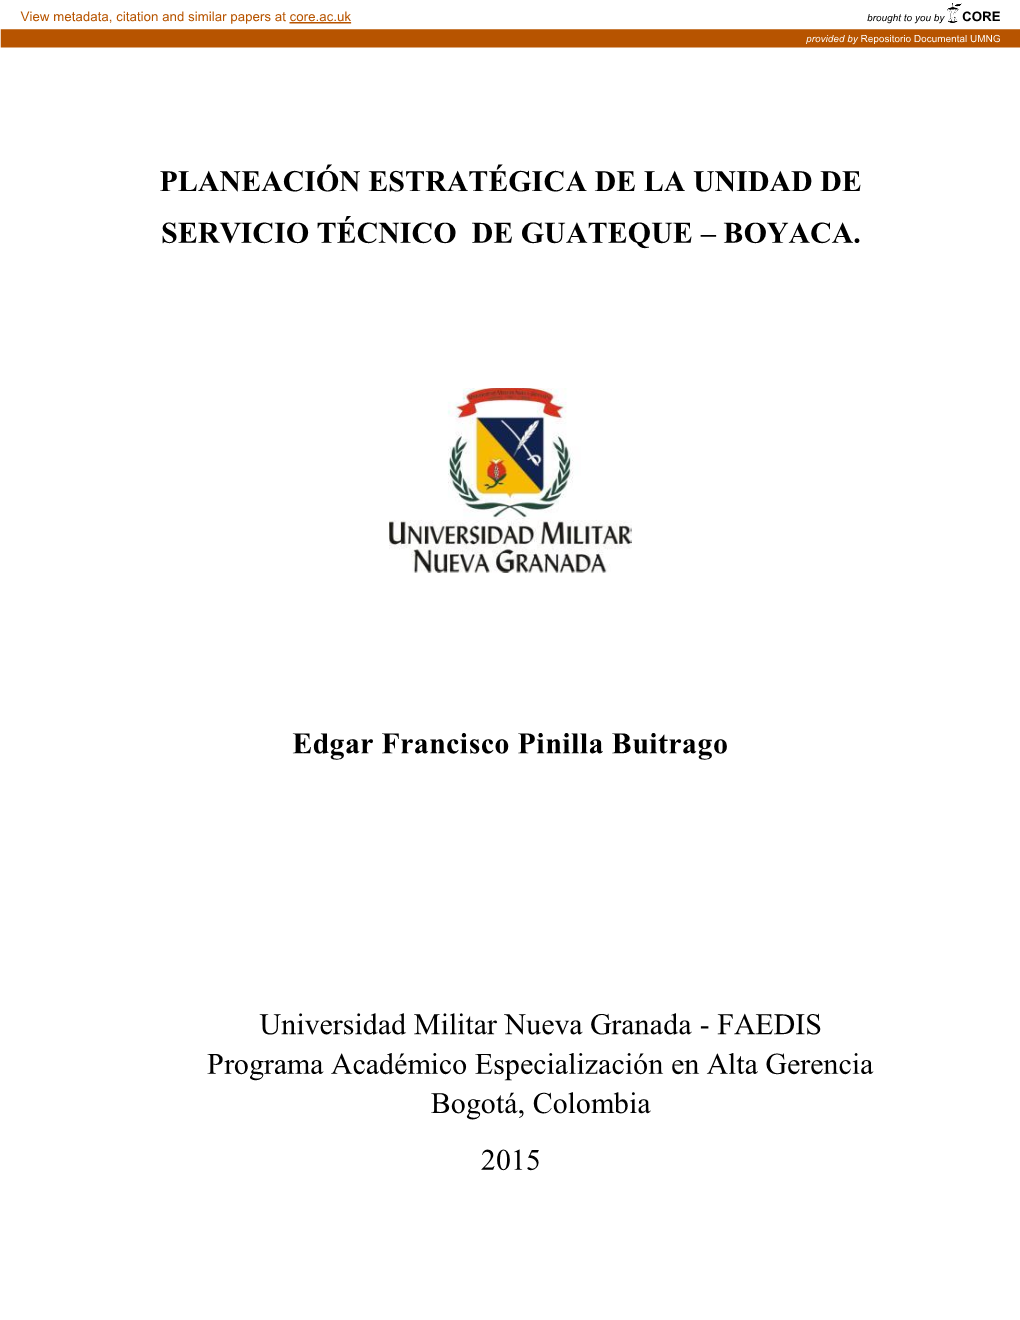 Planeación Estratégica De La Unidad De Servicio Técnico De Guateque – Boyaca